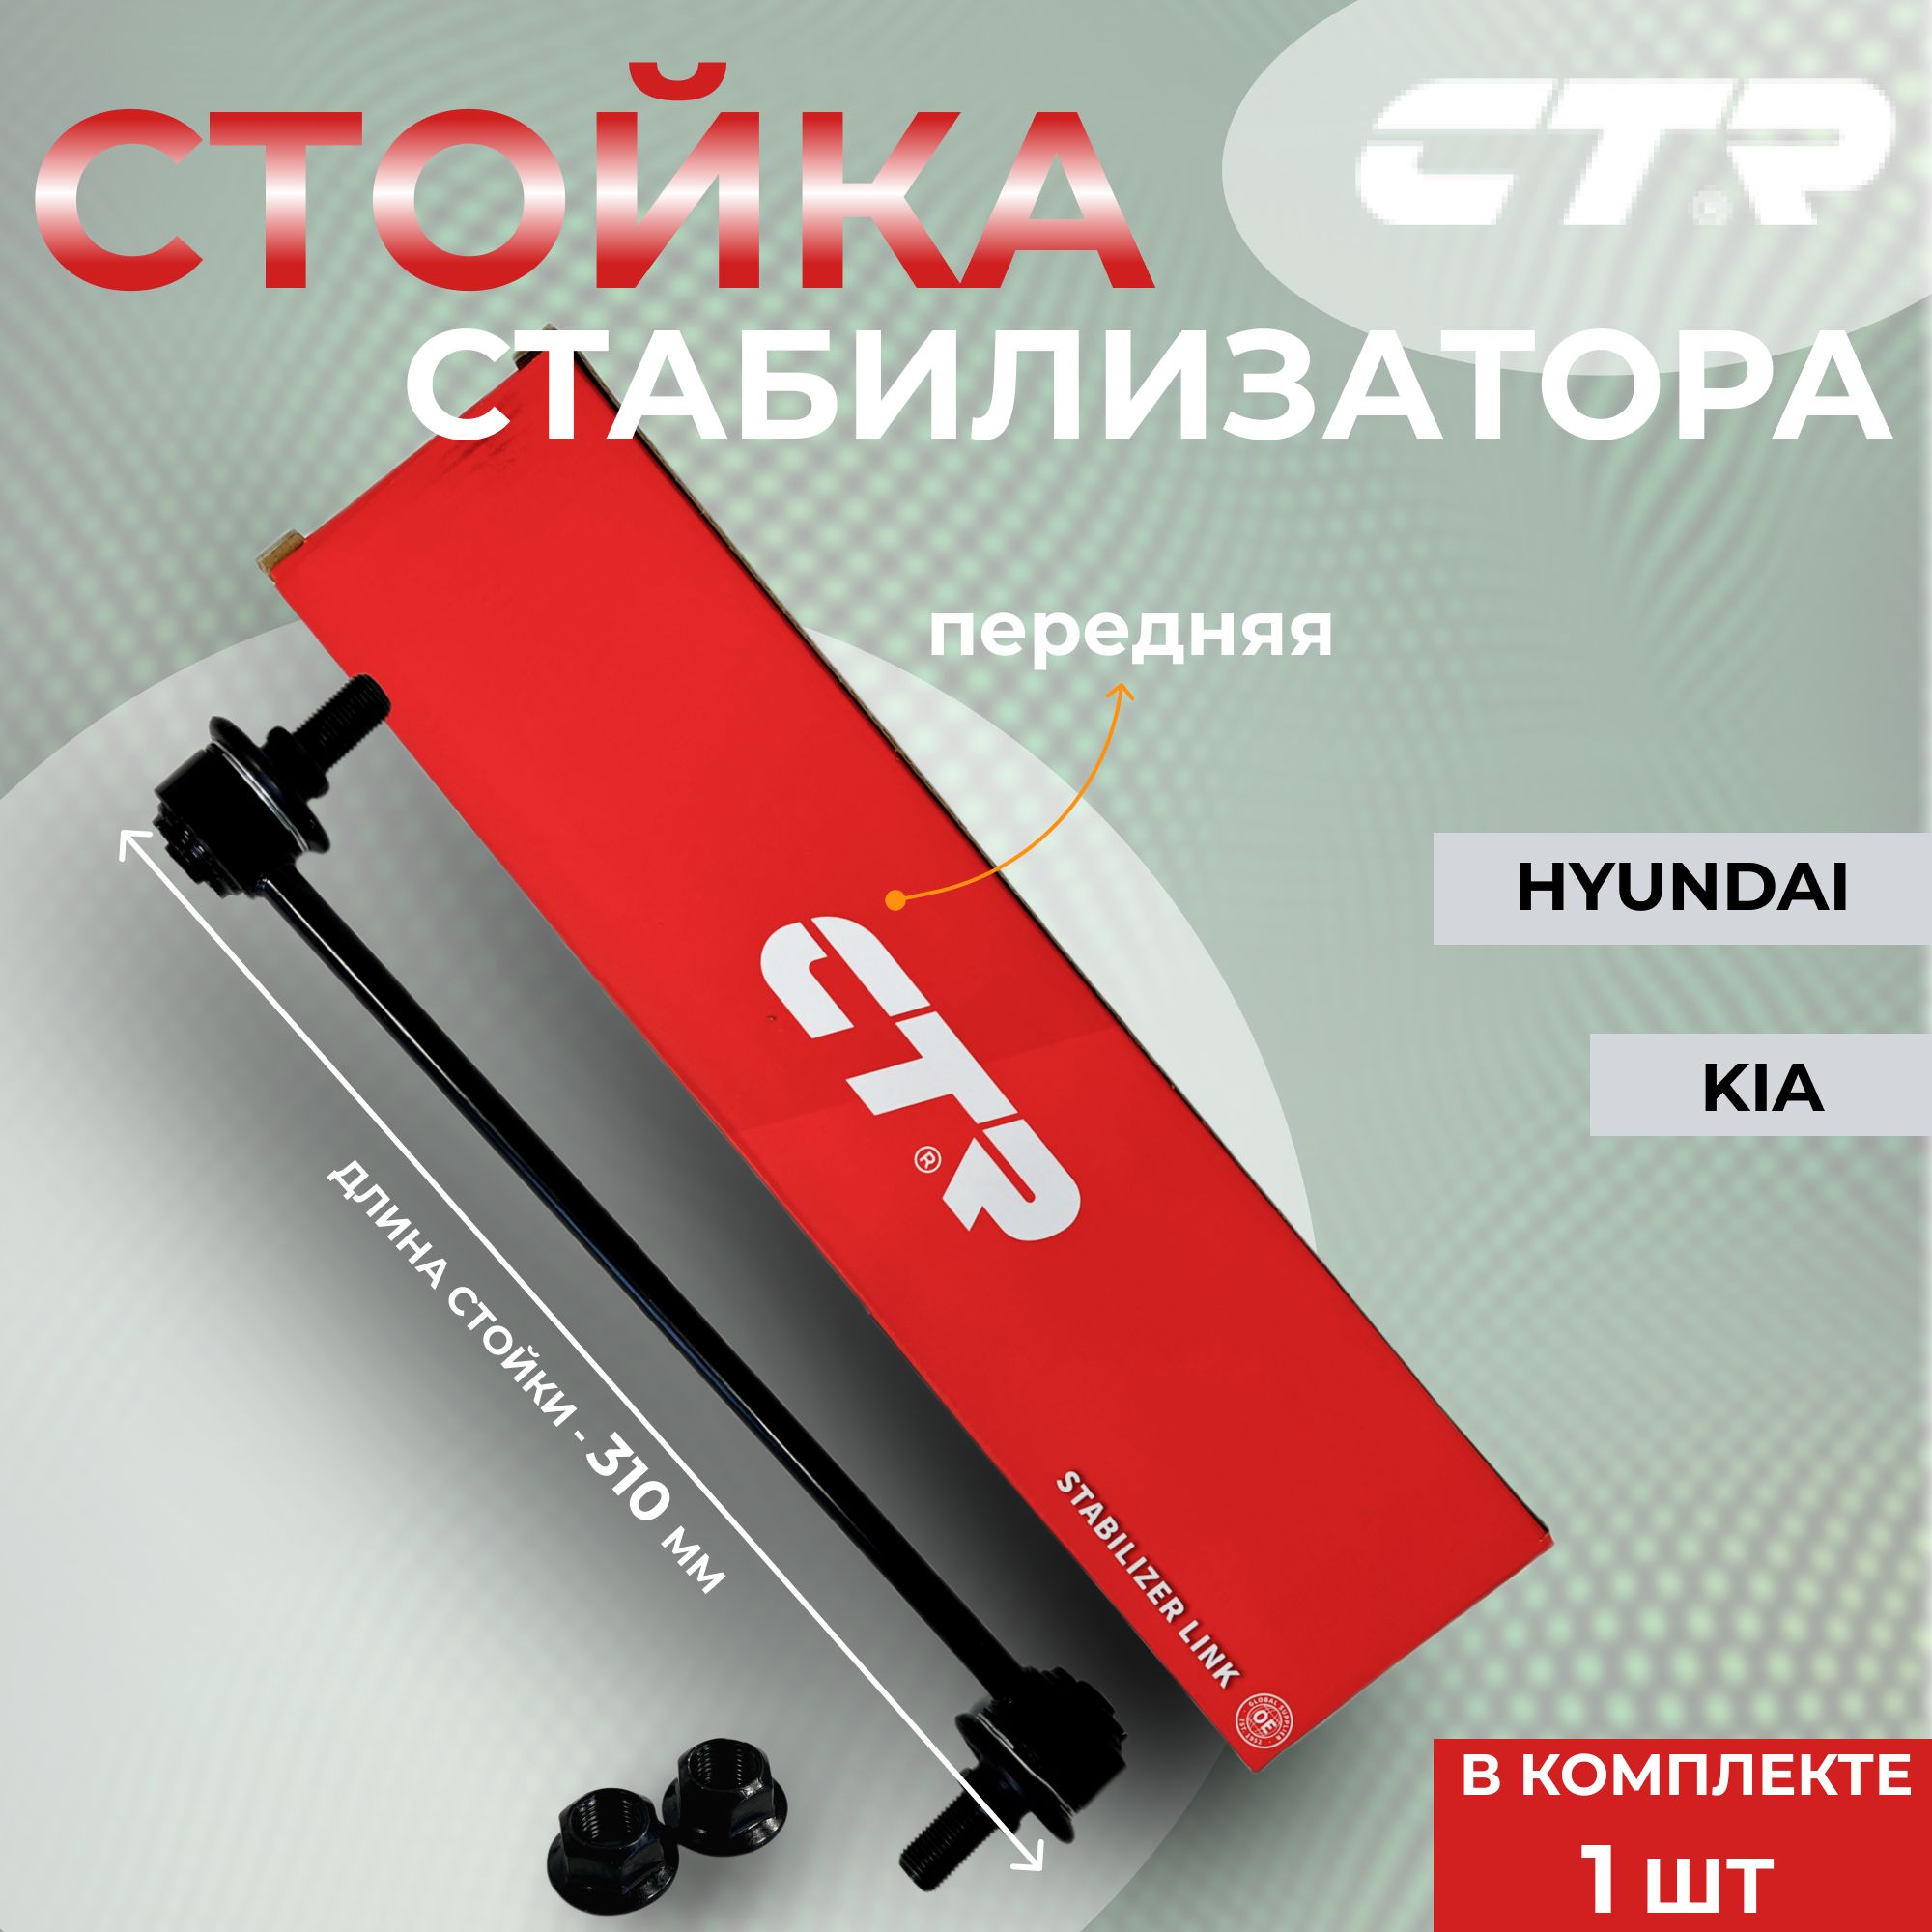 Замена передних стоек амортизатора. — Hyundai Solaris, 1,6 л